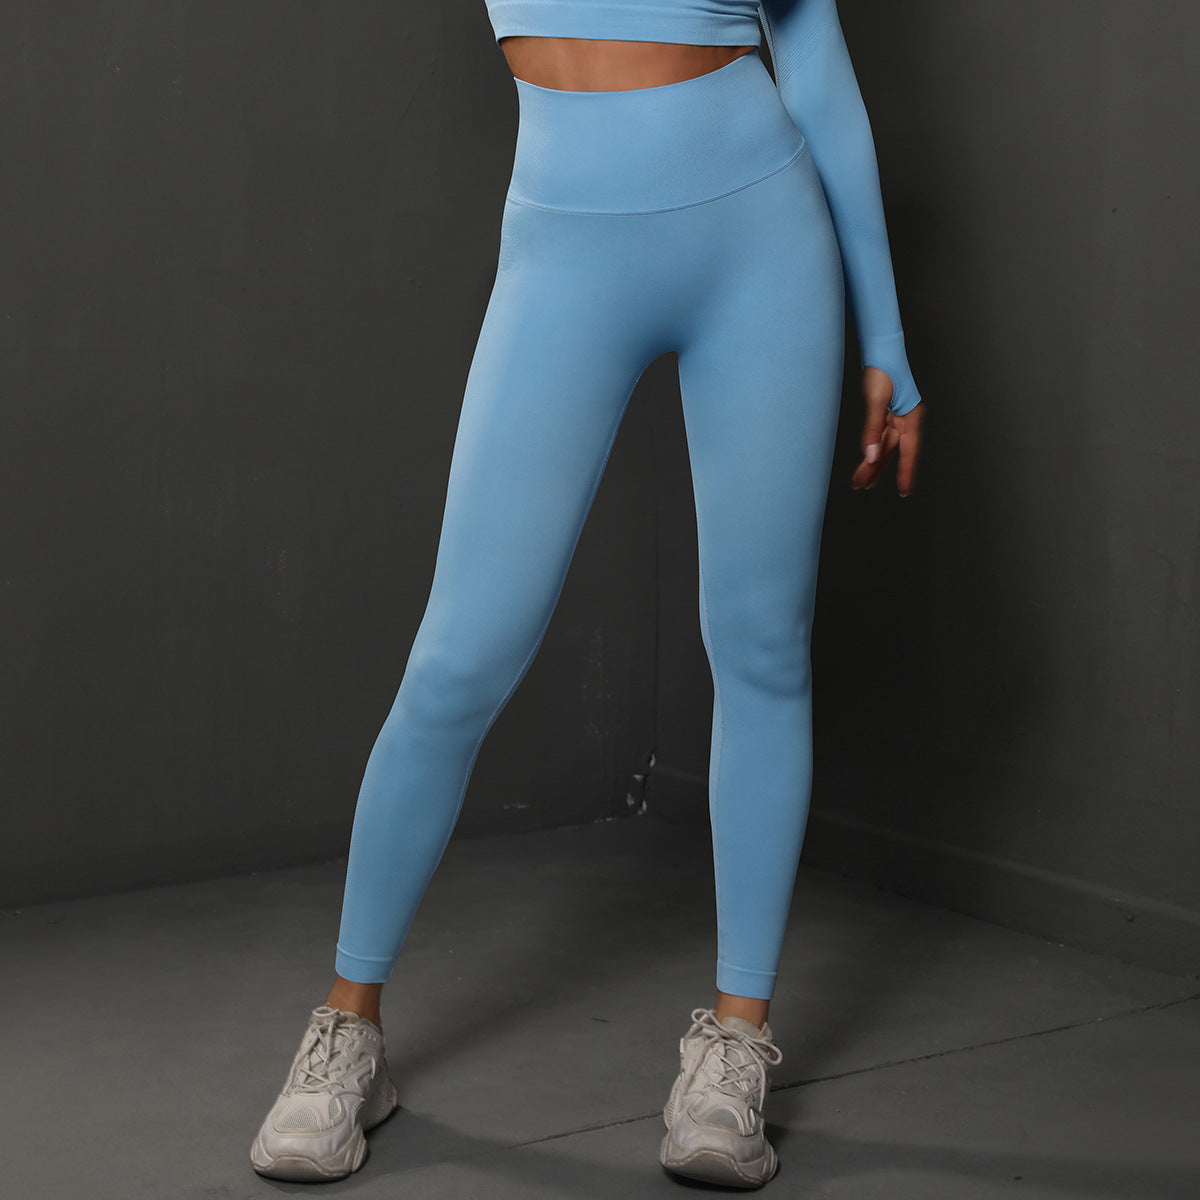 High Waist Seamless Yoga Pants Women's Solid Color Full Length Leggings Fitness Hip Up Running Sport Gym Legging Outfits - ROMART GLOBAL LTD